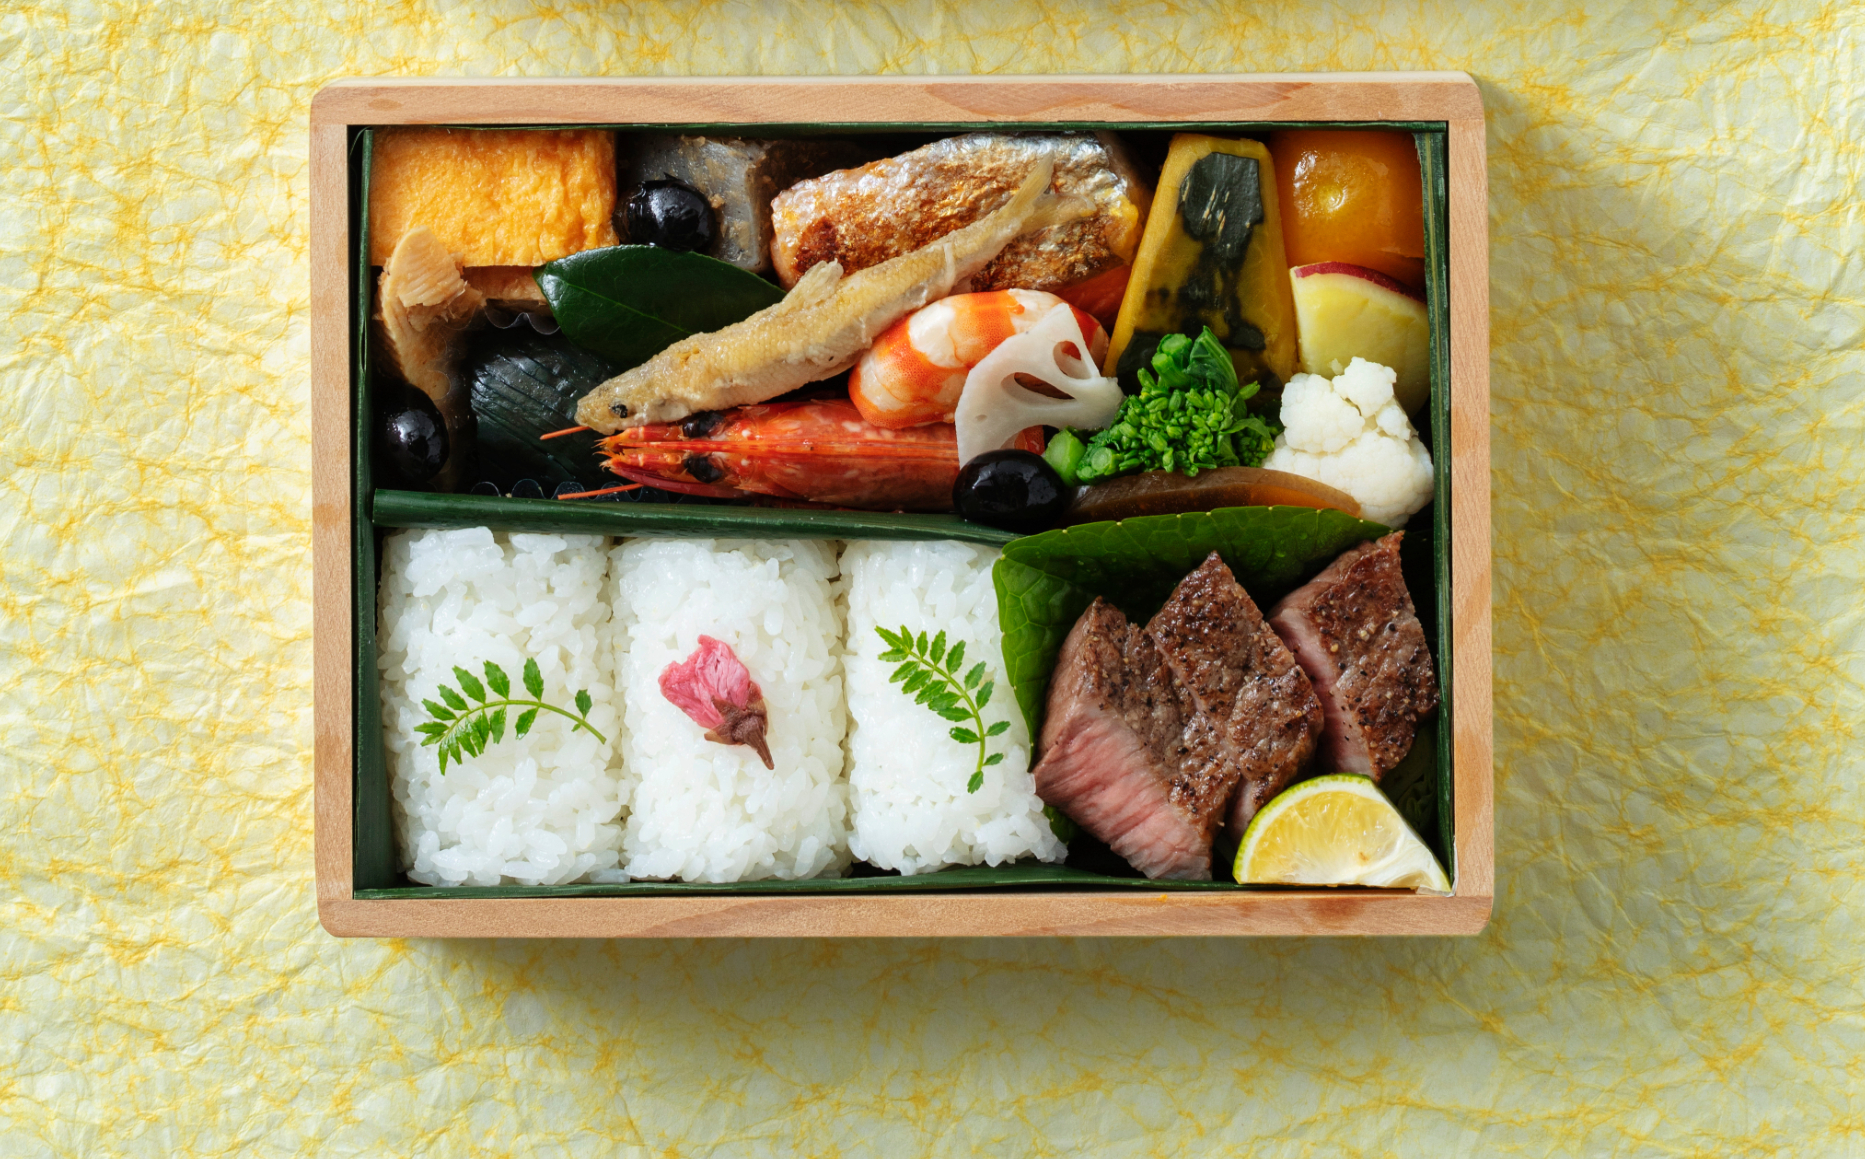 予約殺到中 銀座凮月堂 のコース料理が自宅で味わえる絶品お弁当3選 Food Hanako Tokyo